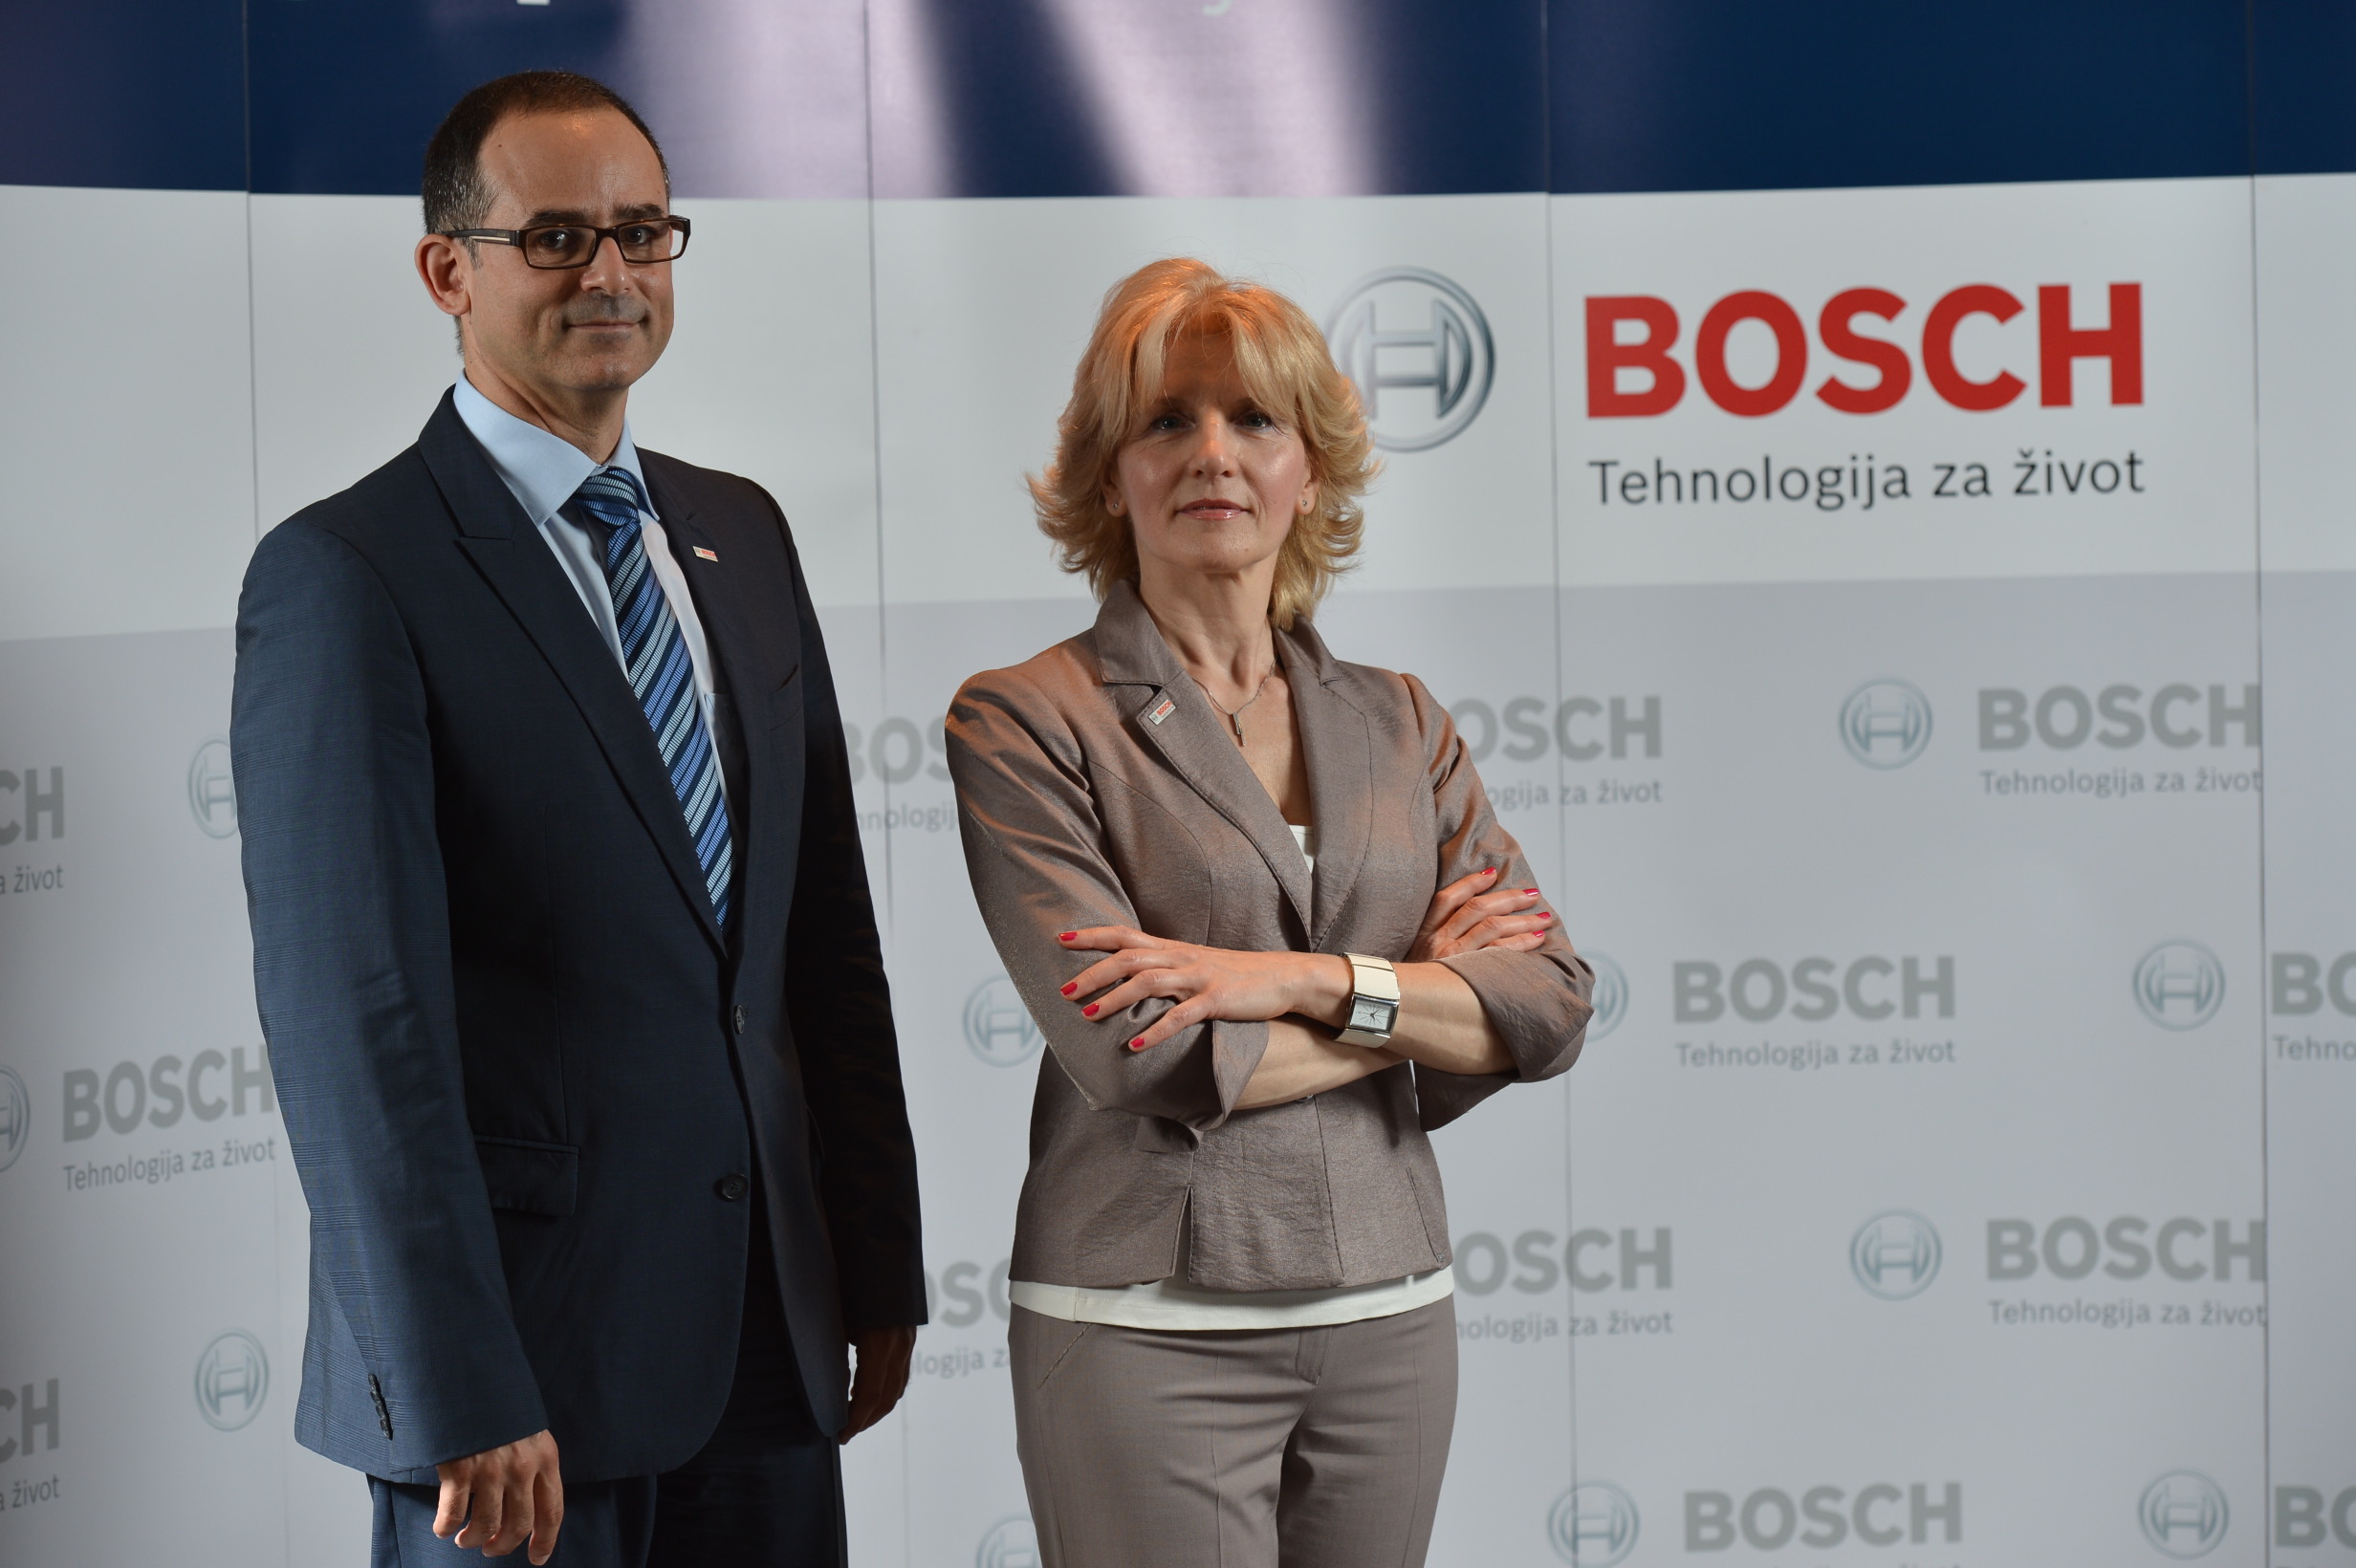 Godišnja press konferencija Bosch grupe u Srbiji 2015